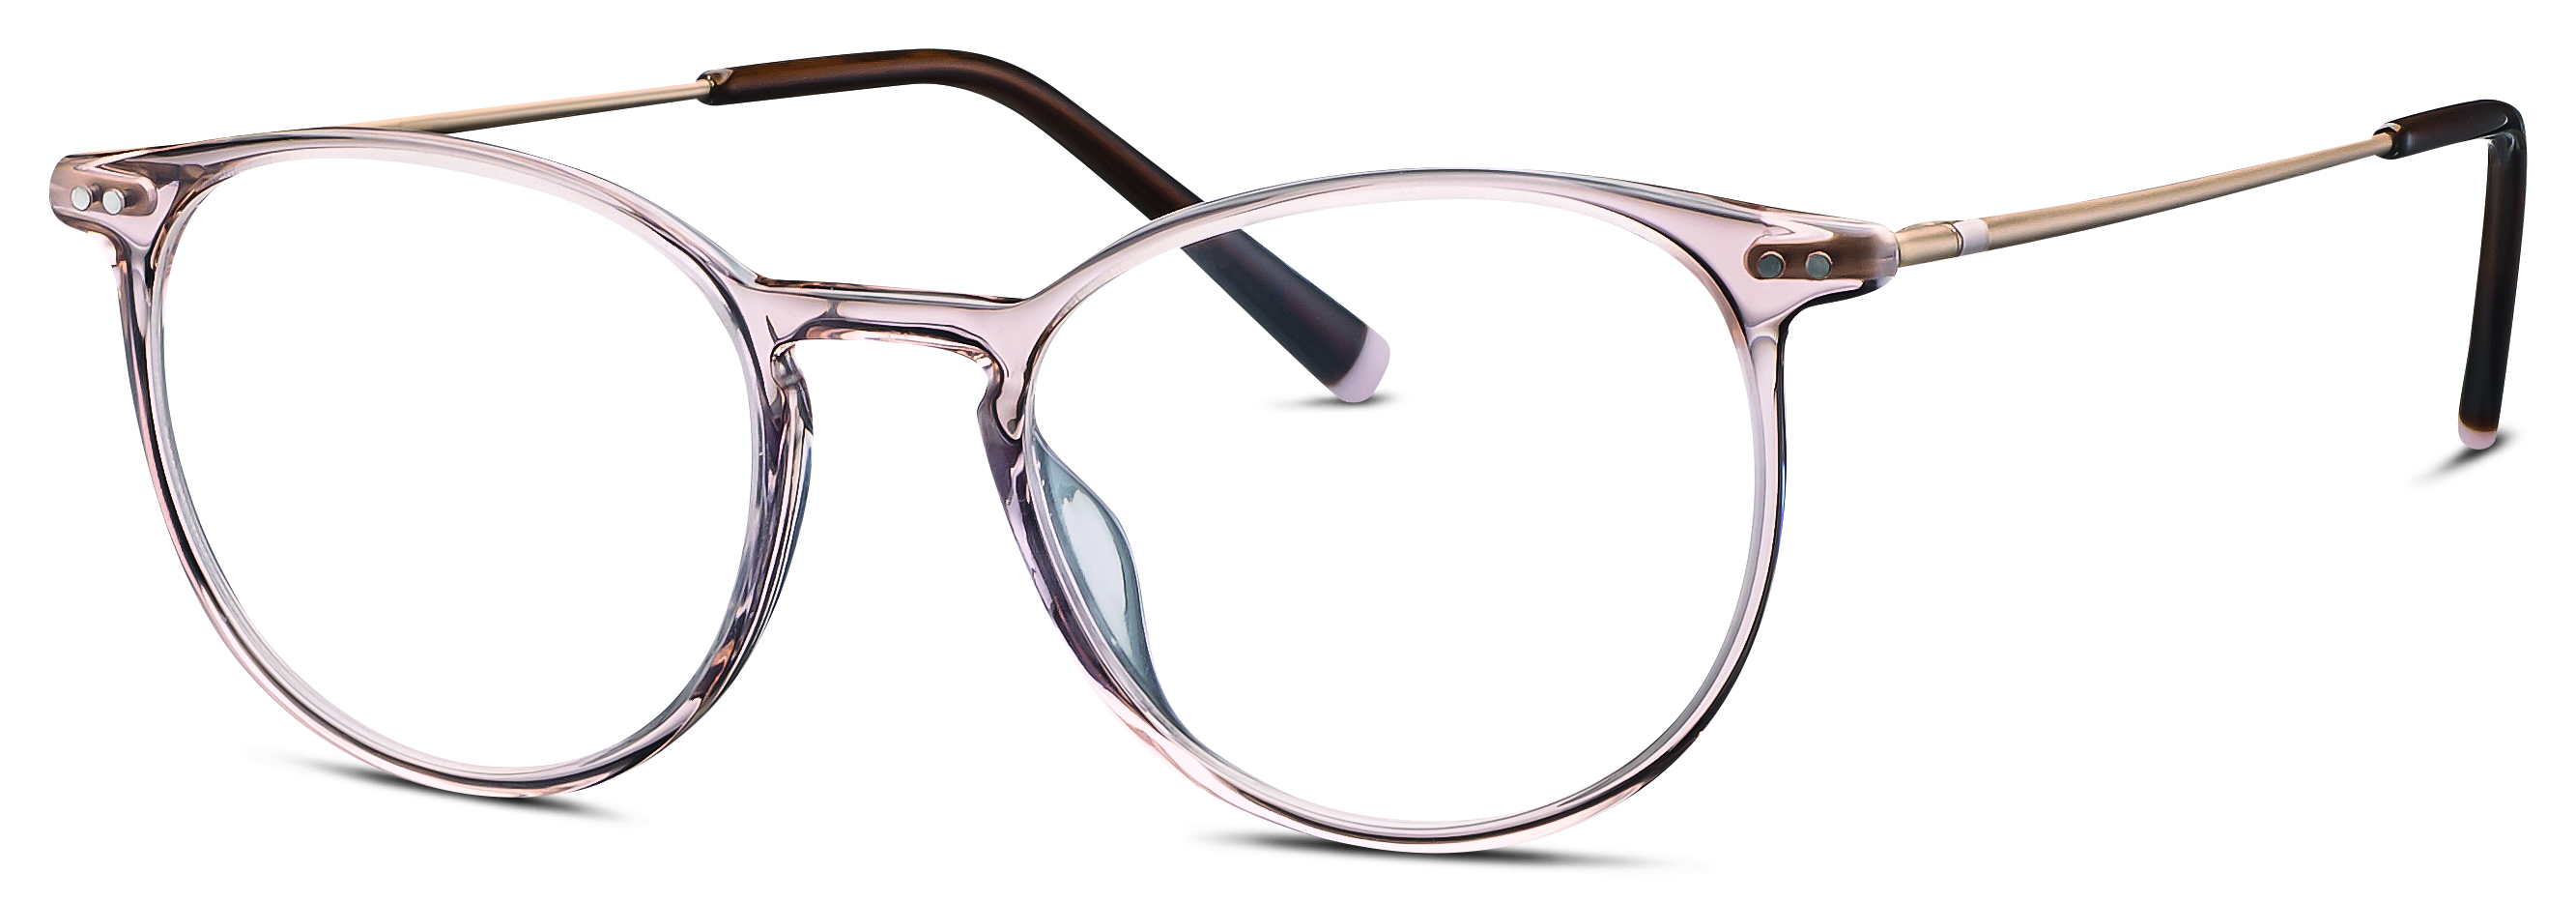 Das Bild zeigt die Korrektionsbrille 581066 52 von der Marke Humphreys in rosa transparent.